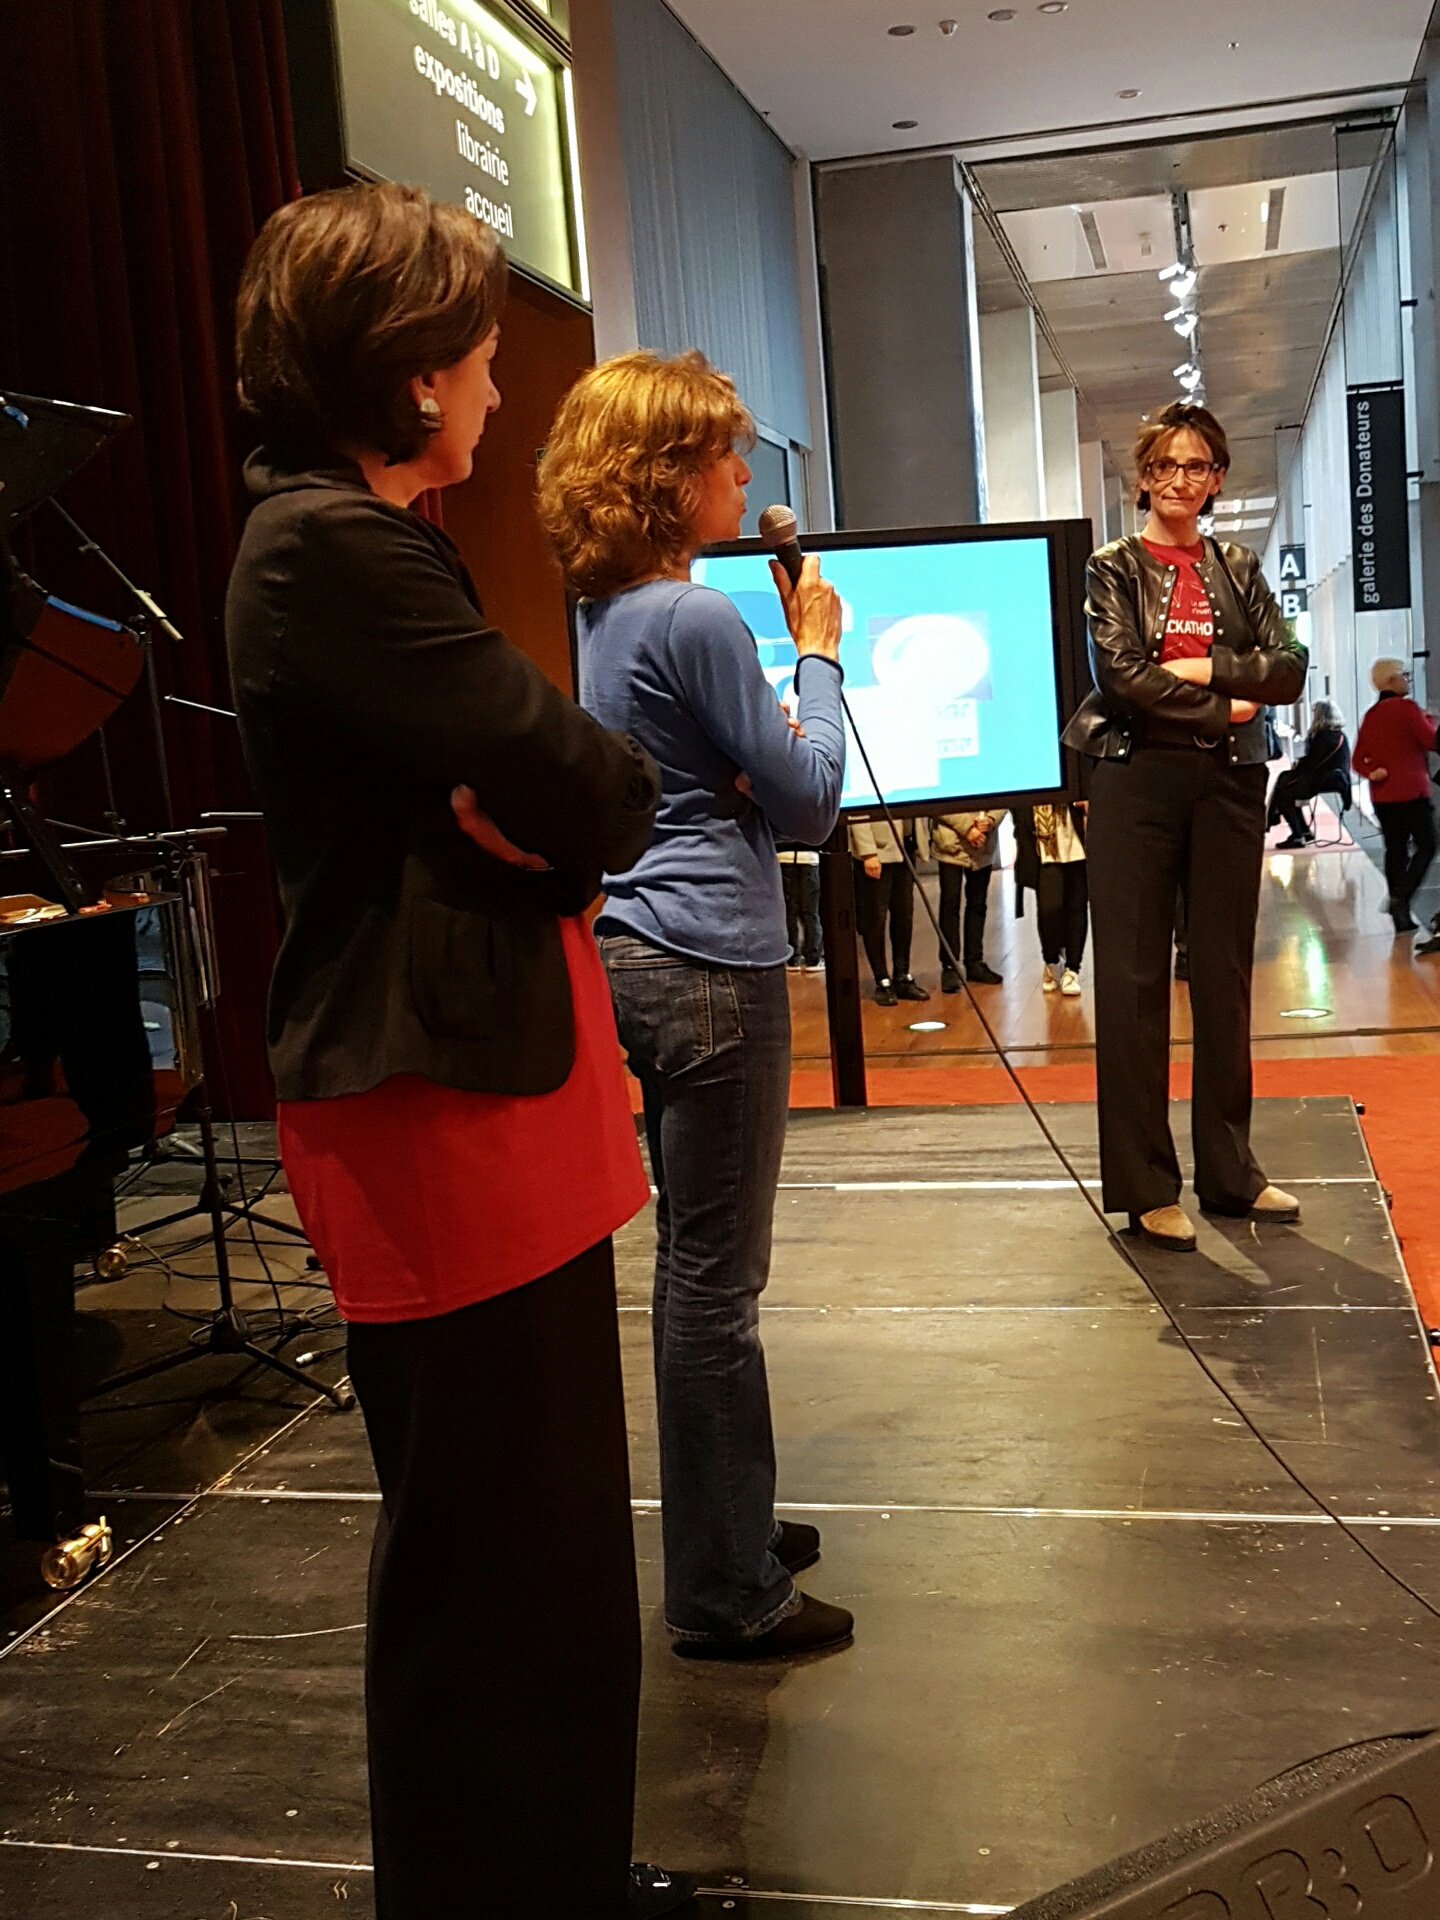 Laure de la Bretèche @sg_map prend la parole juste avant la remise du prix #hackathonBnF https://t.co/ZnrFphKaM4